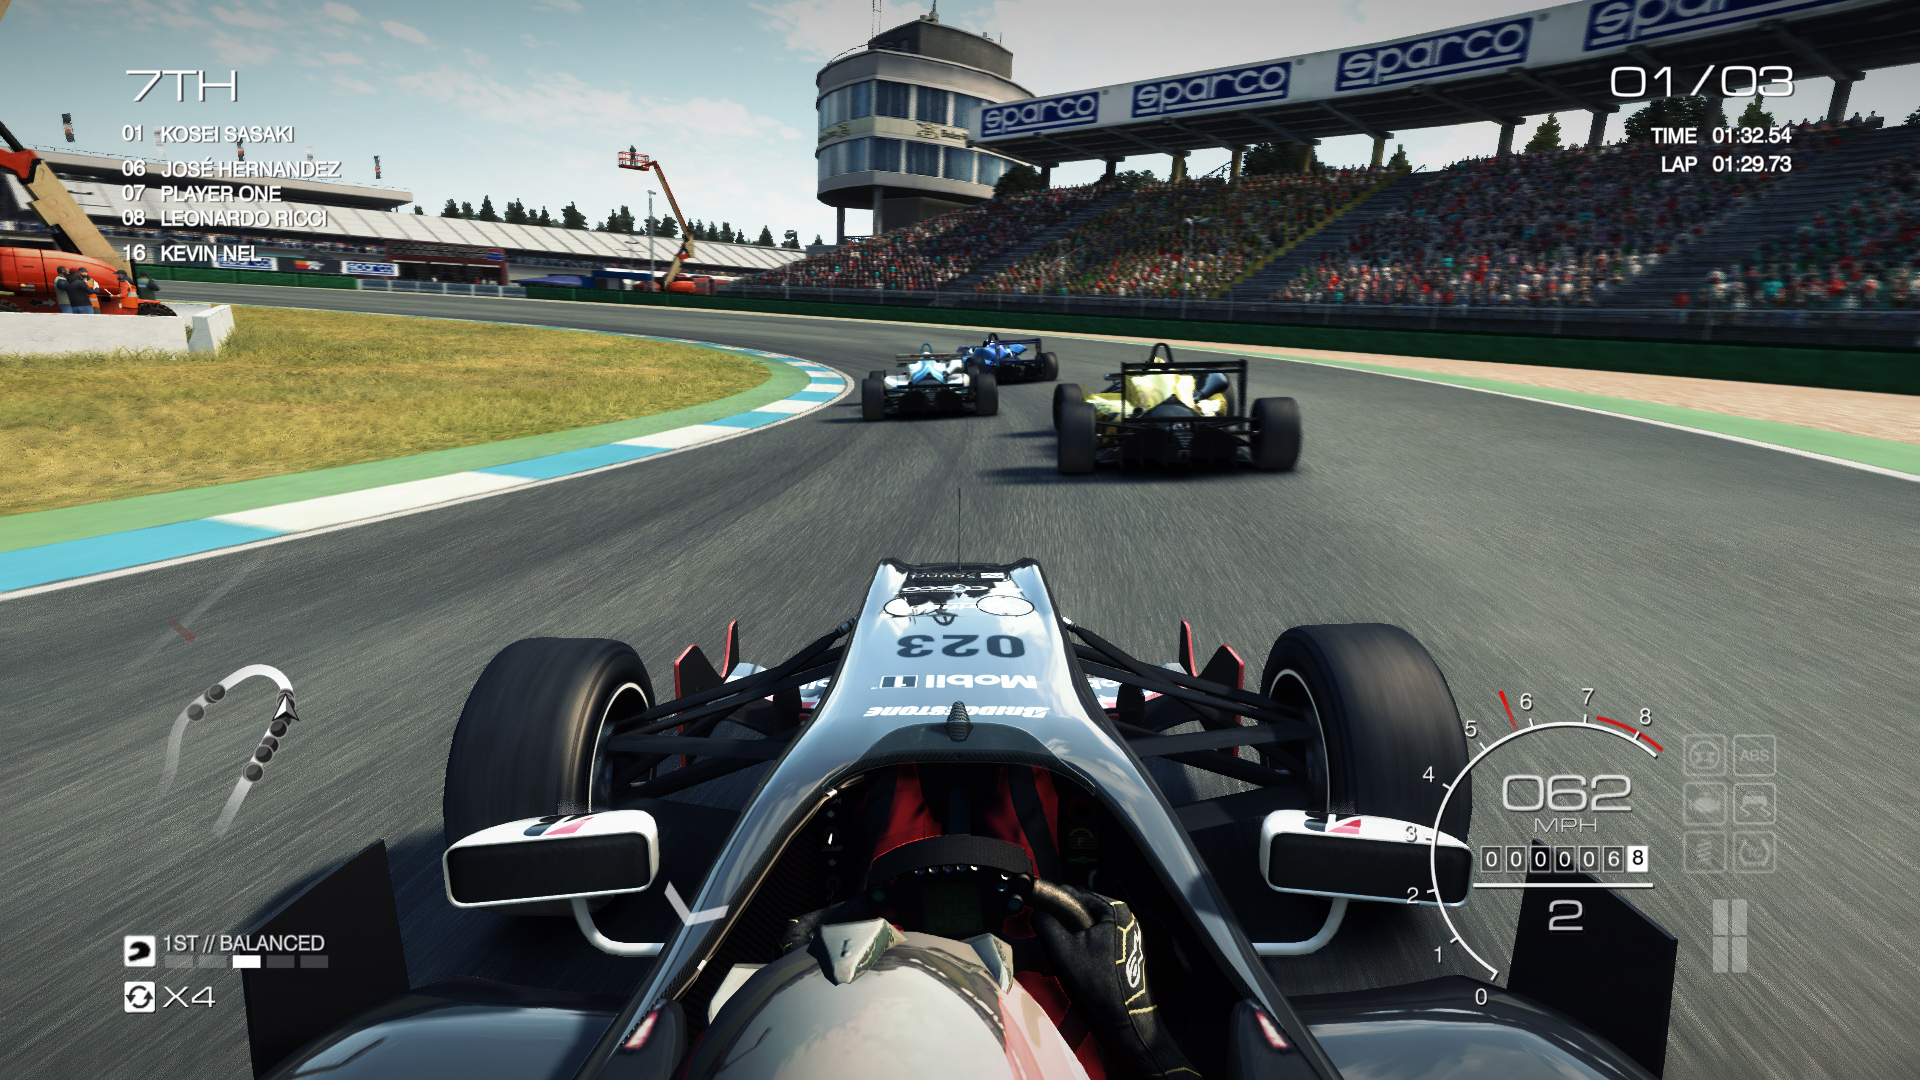 pixel 3 grid autosport background